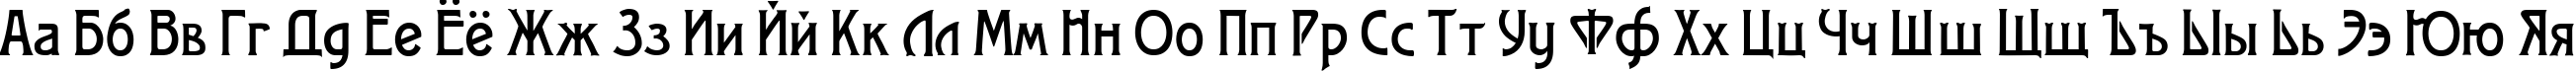 Пример написания русского алфавита шрифтом Modernist One